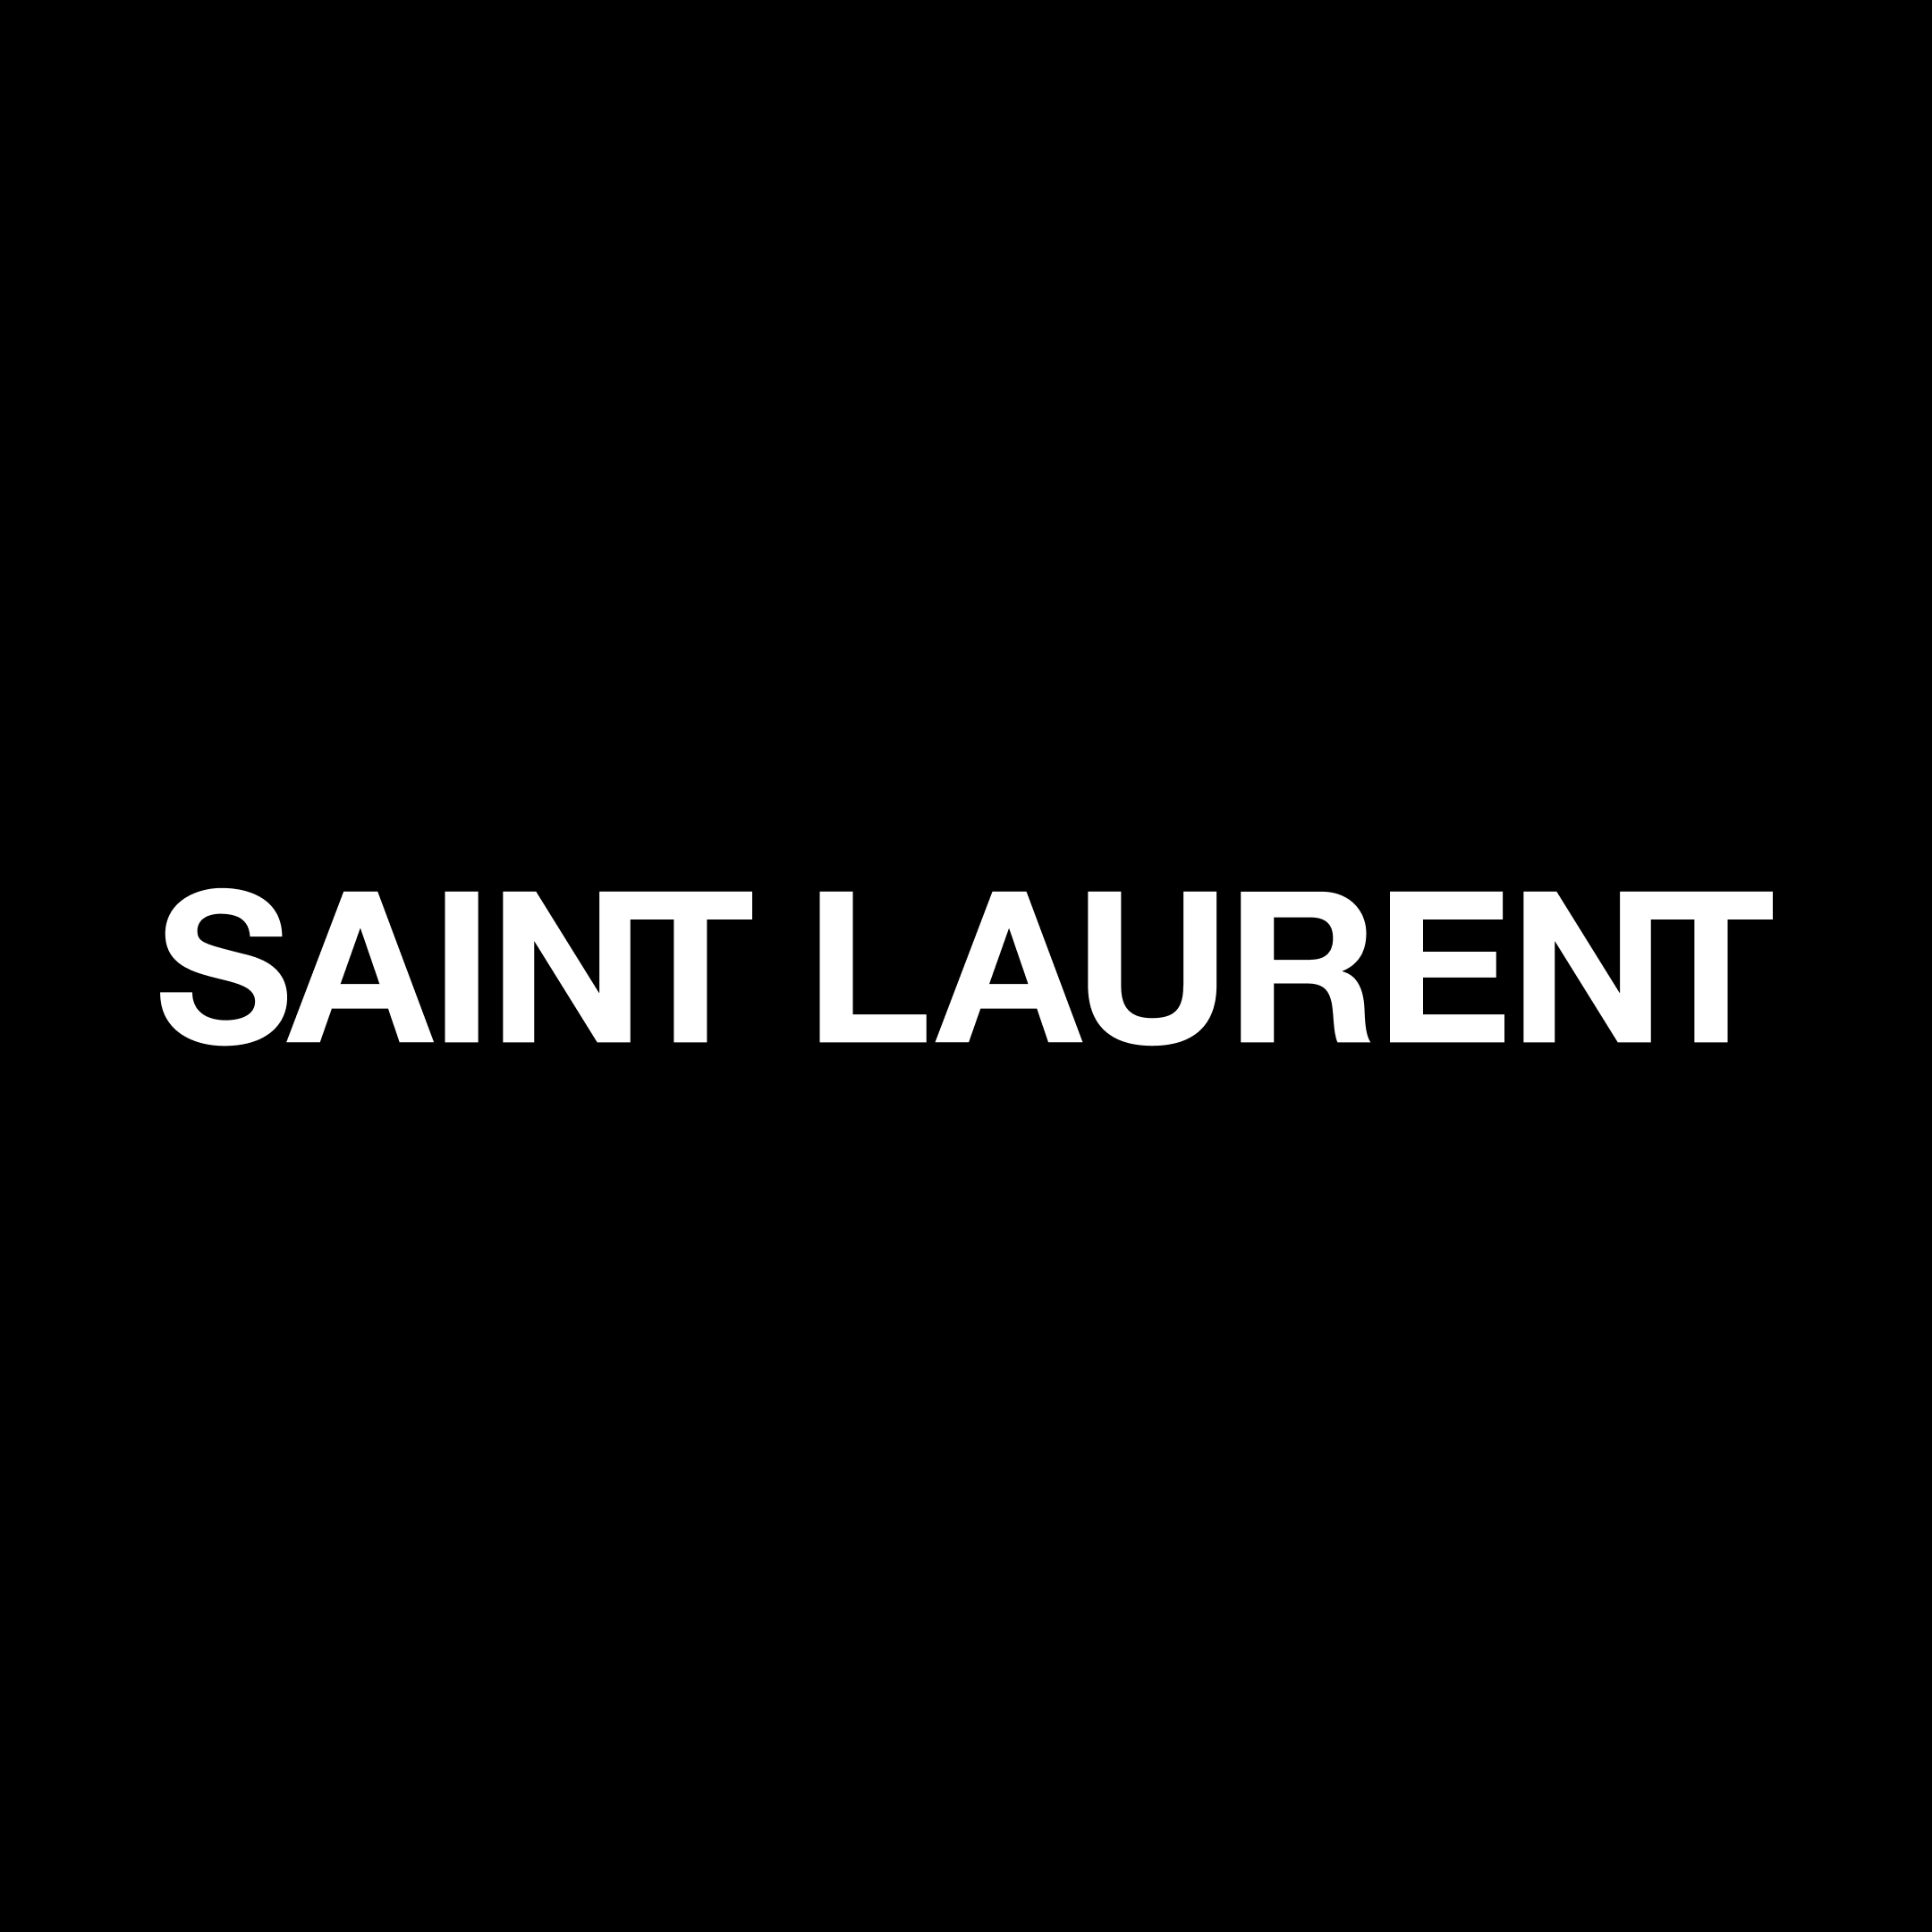 Saint Laurent - Toronto, ON M5S 2W7 - (437)562-5800 | ShowMeLocal.com